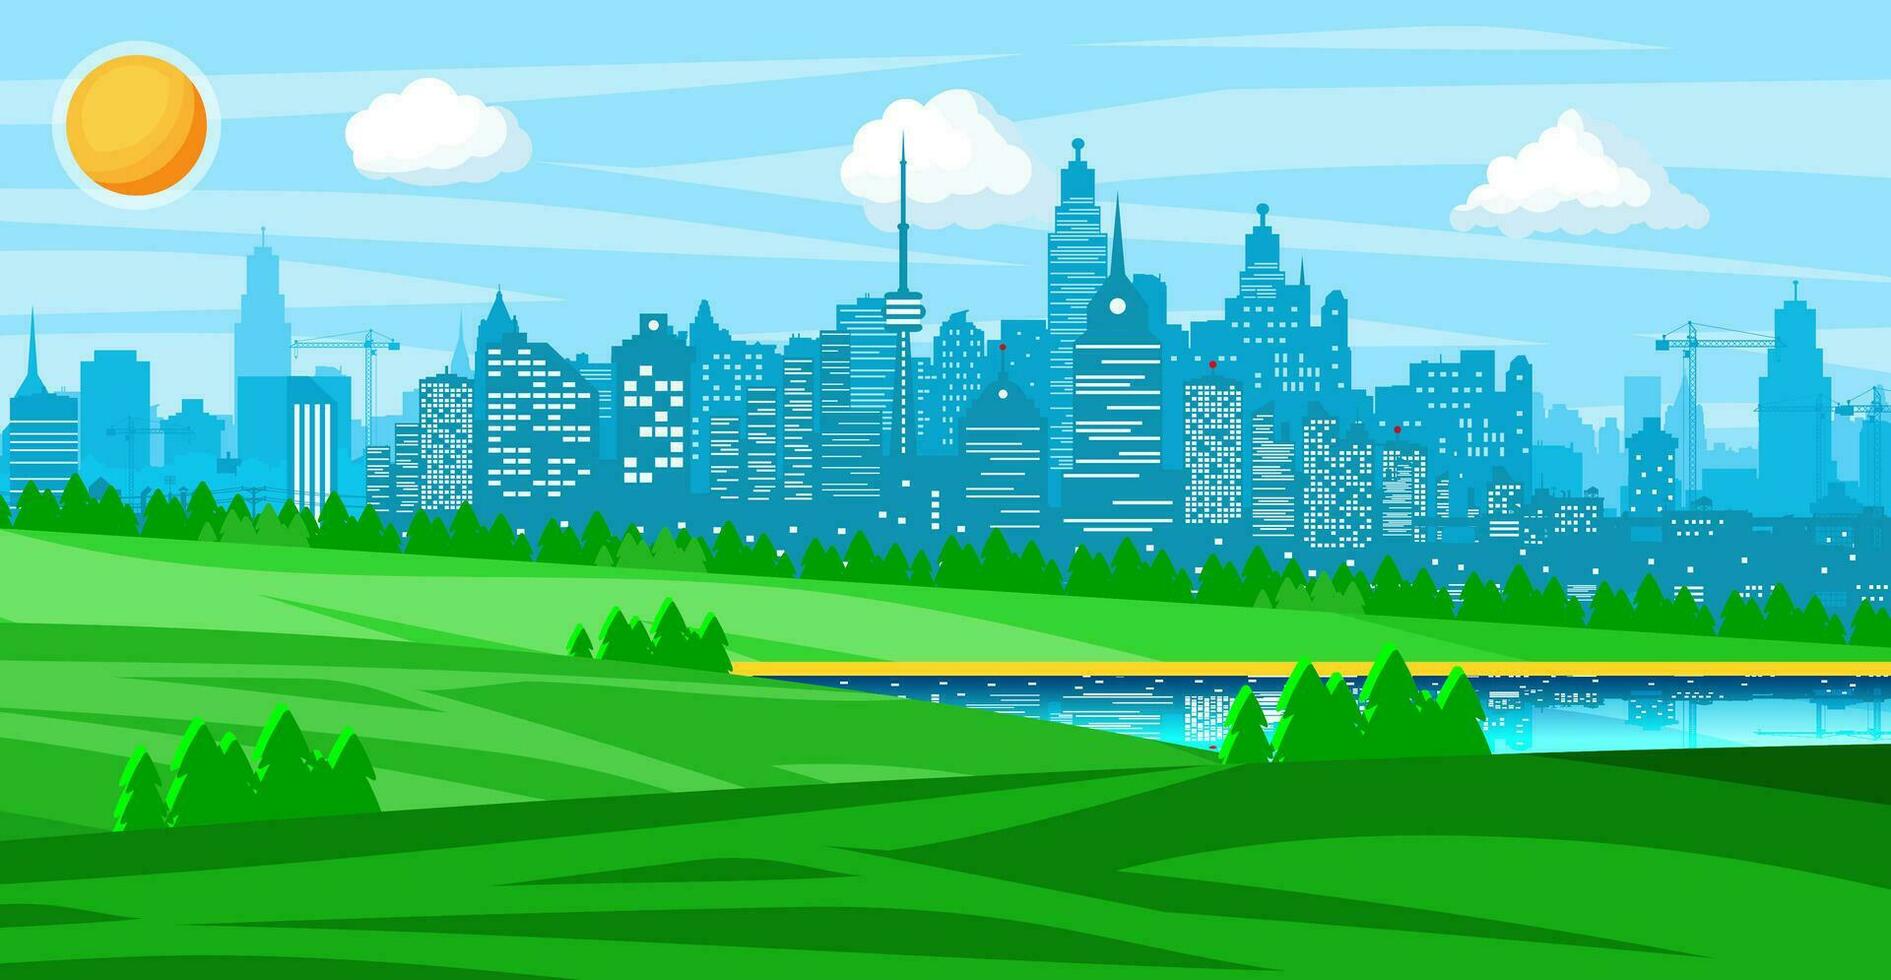 stad park concept. stedelijk Woud panorama. stadsgezicht met gebouwen en bomen. lucht met wolken en zon. vrije tijd tijd in zomer stad park. vector illustratie in vlak stijl